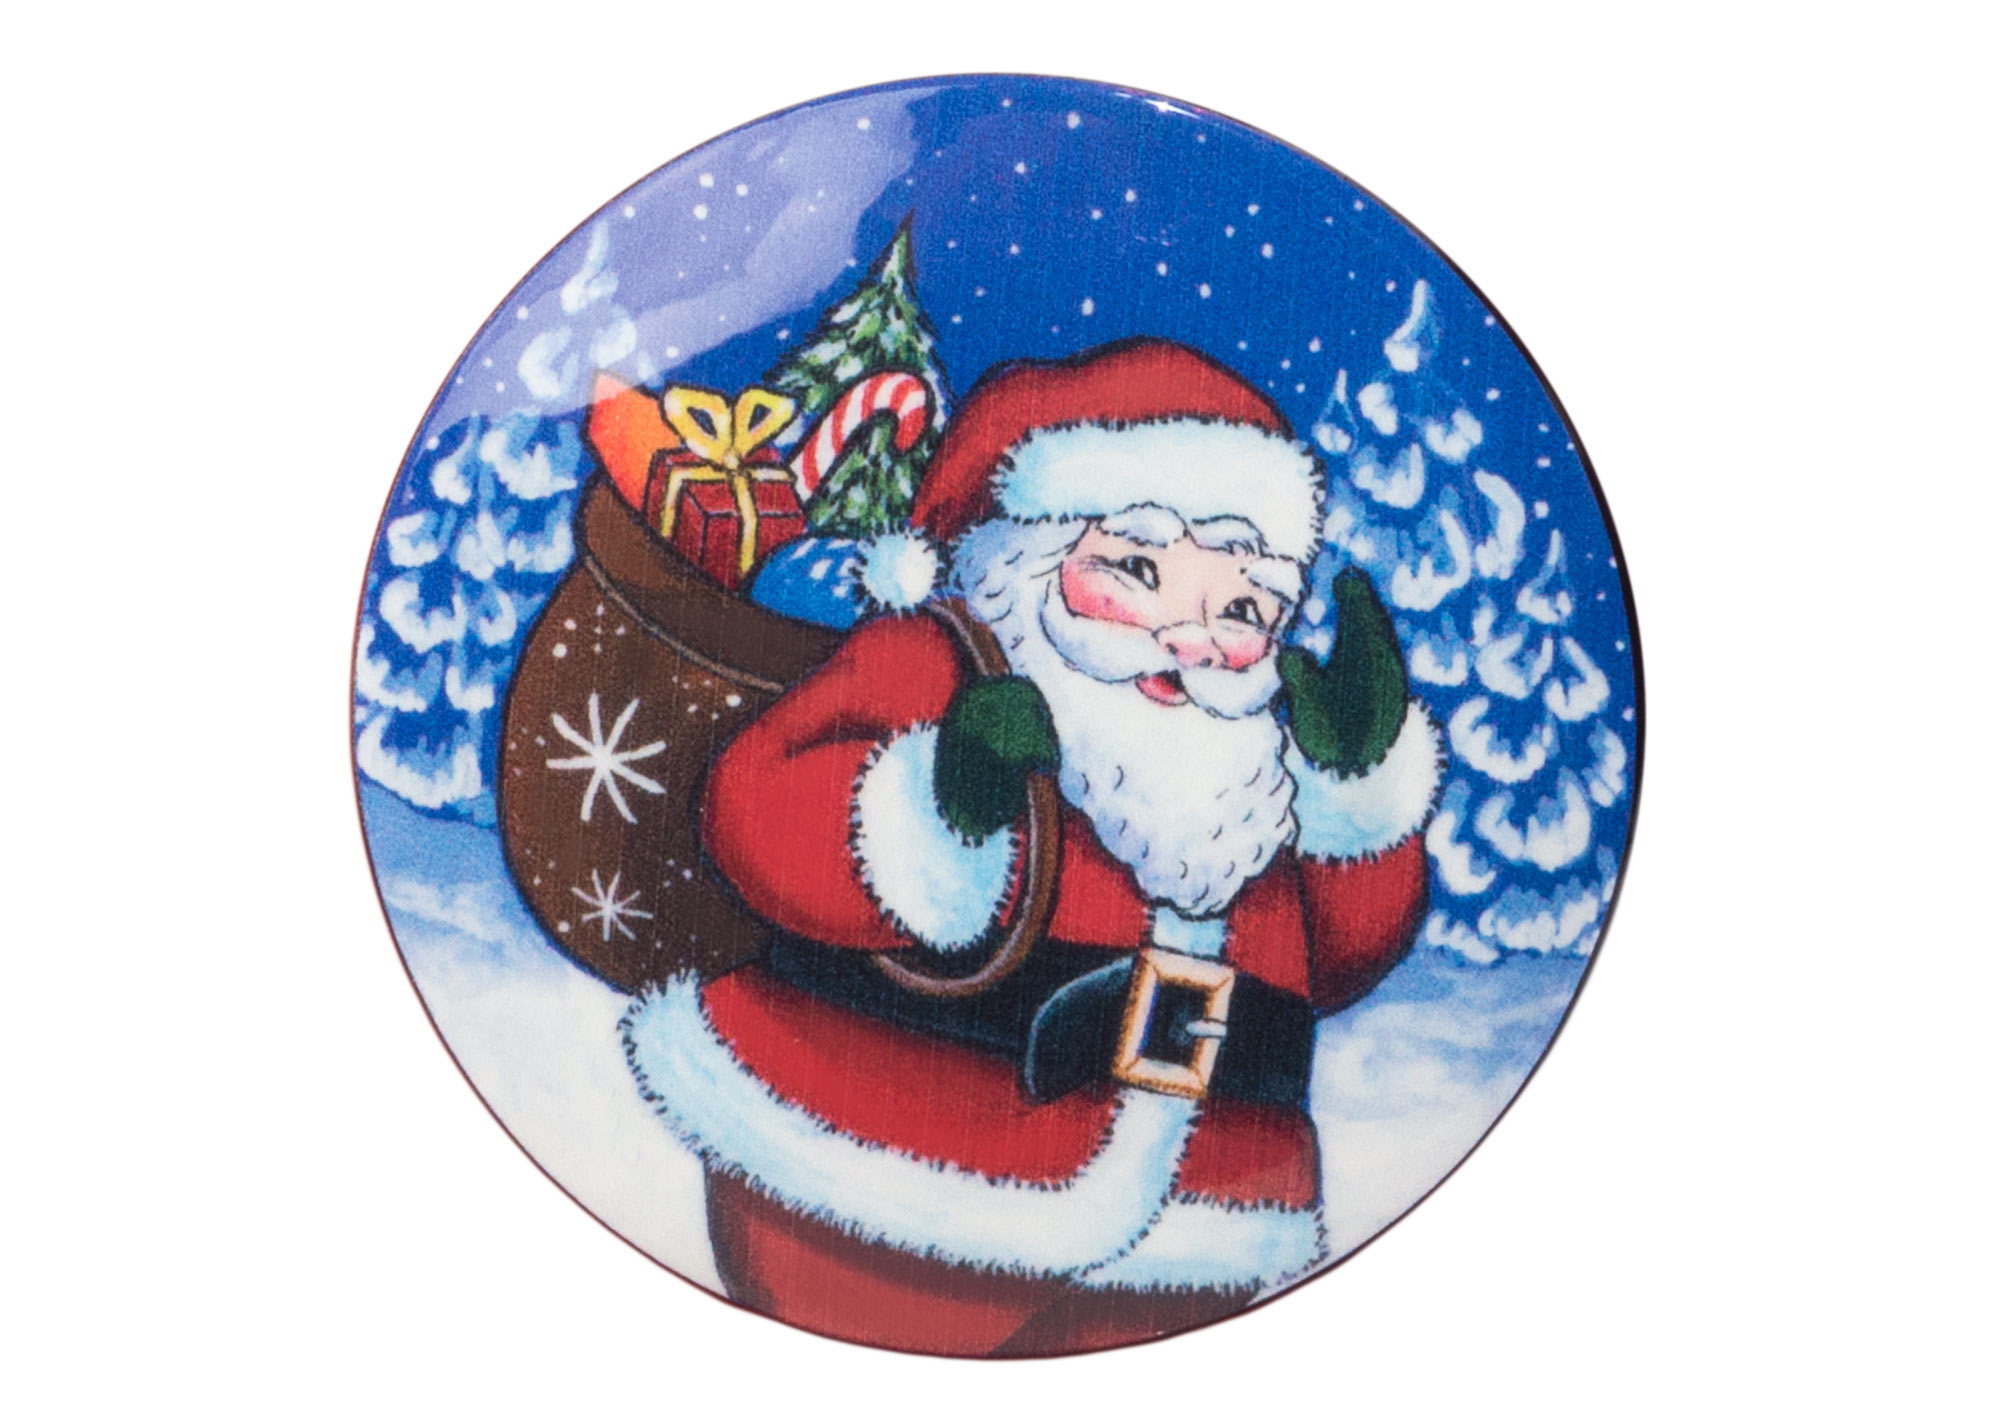 Buy Santa on the Way Brooch 2.5" at GoldenCockerel.com